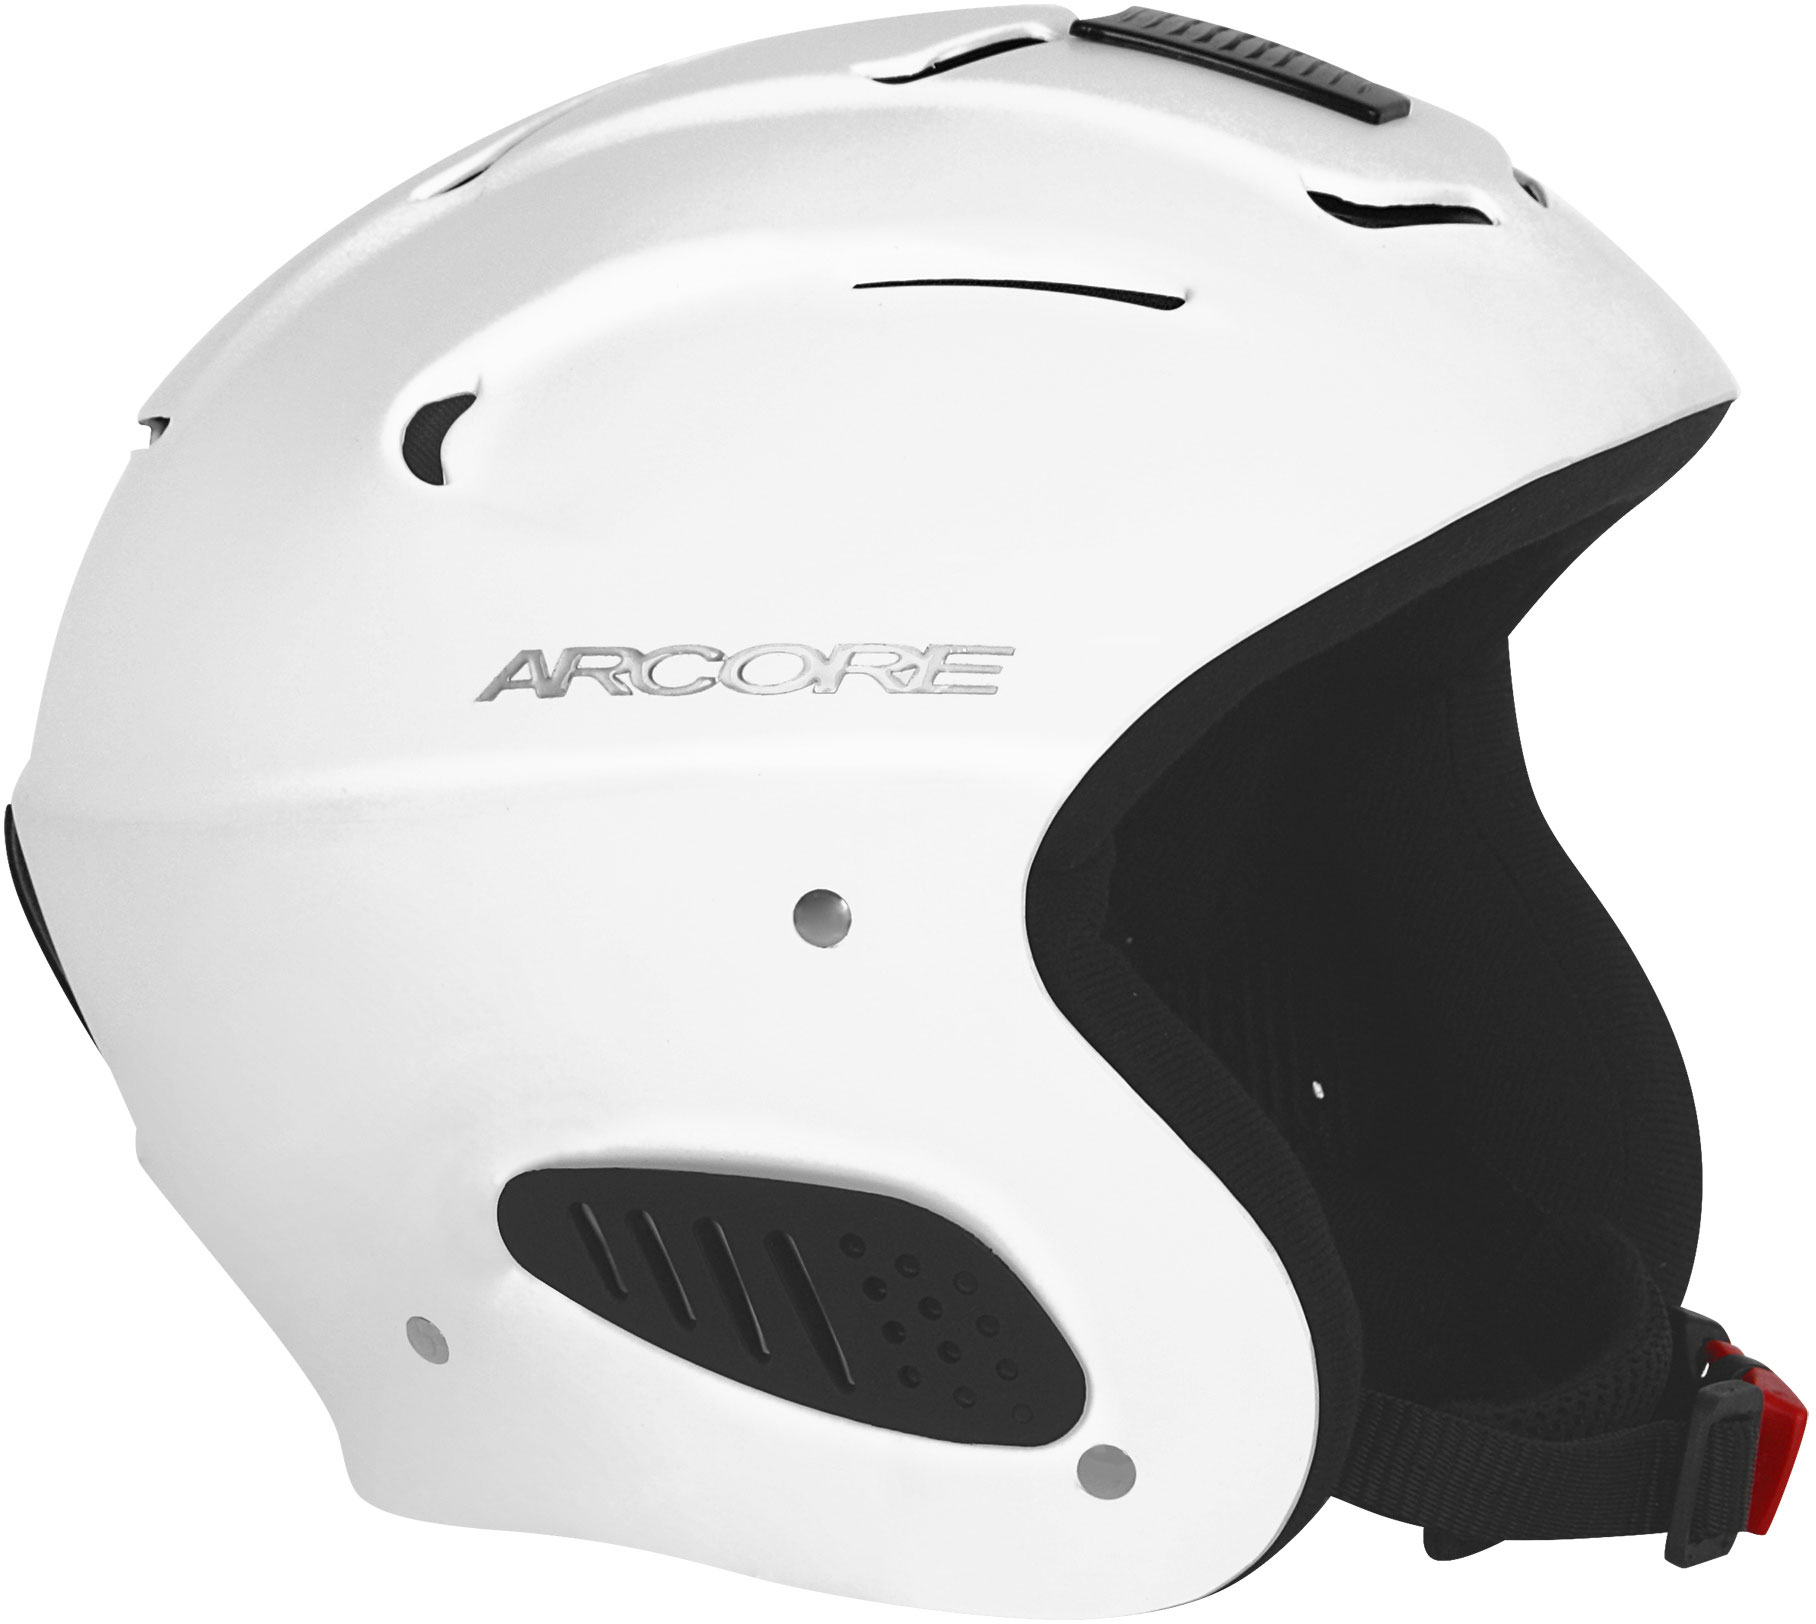 RACE - Ski helmet